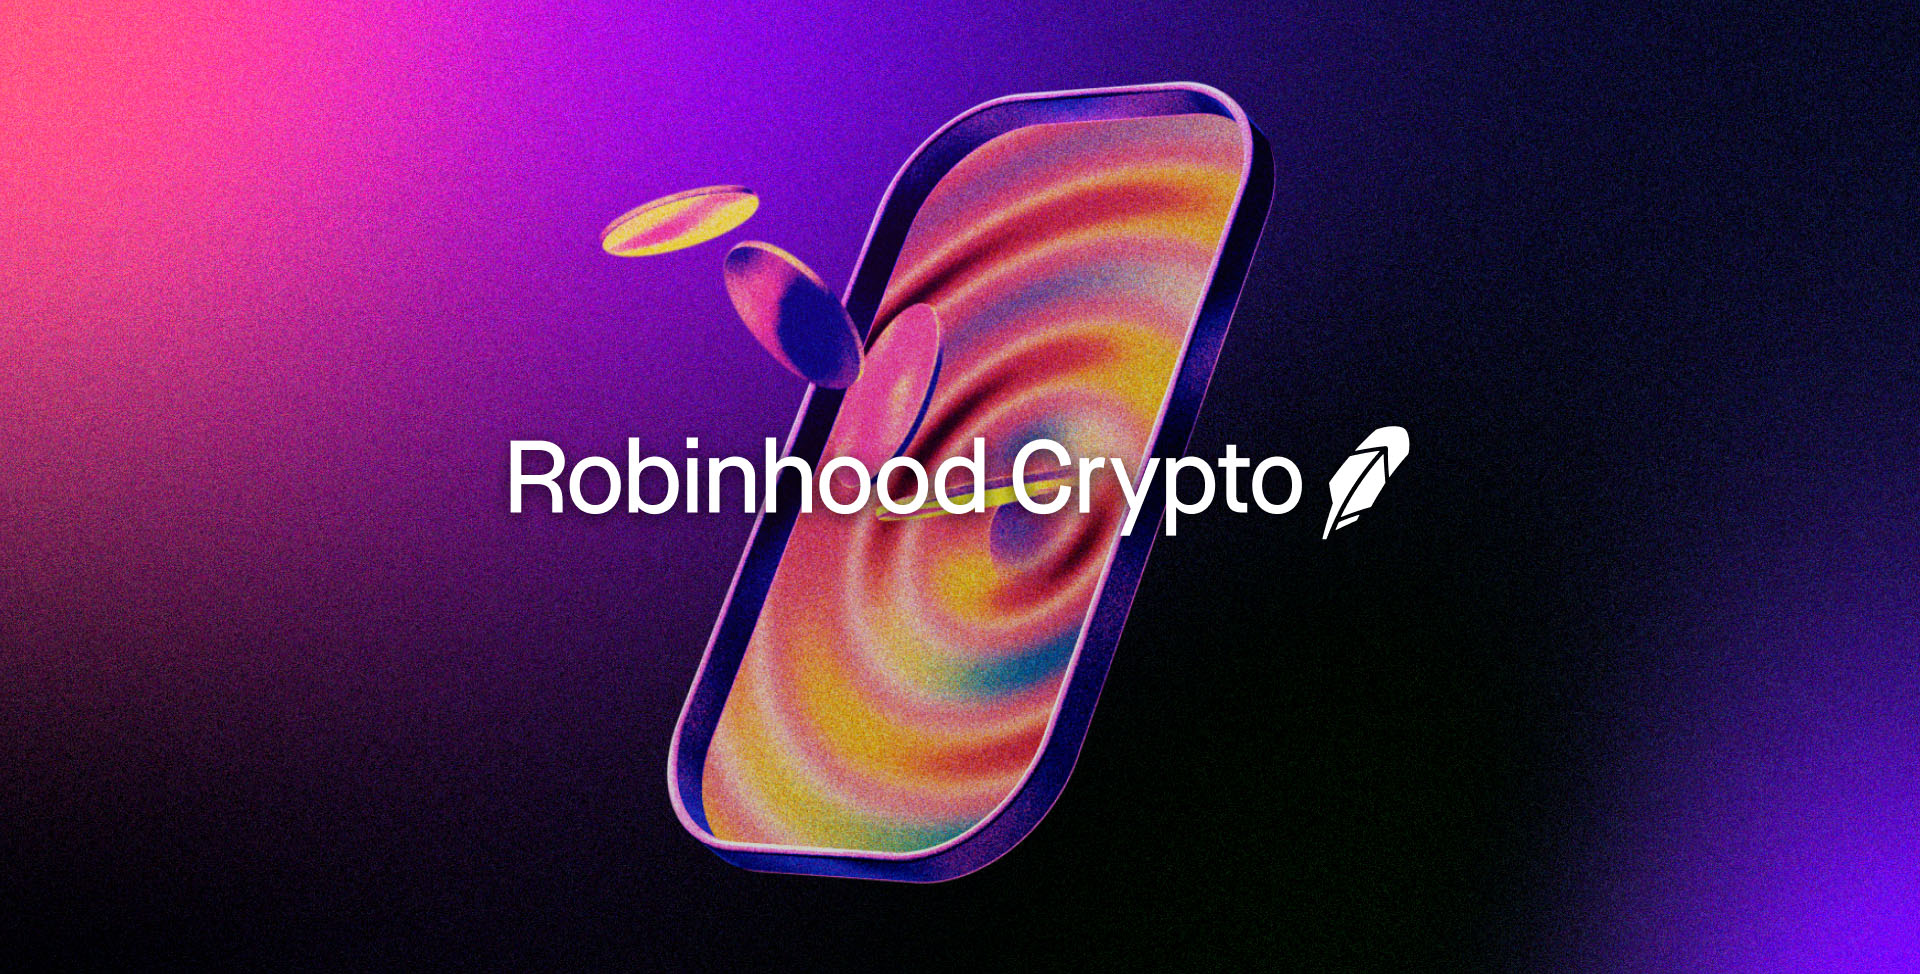 Robinhood Crypto lancia servizi di staking in Europa con app localizzate.